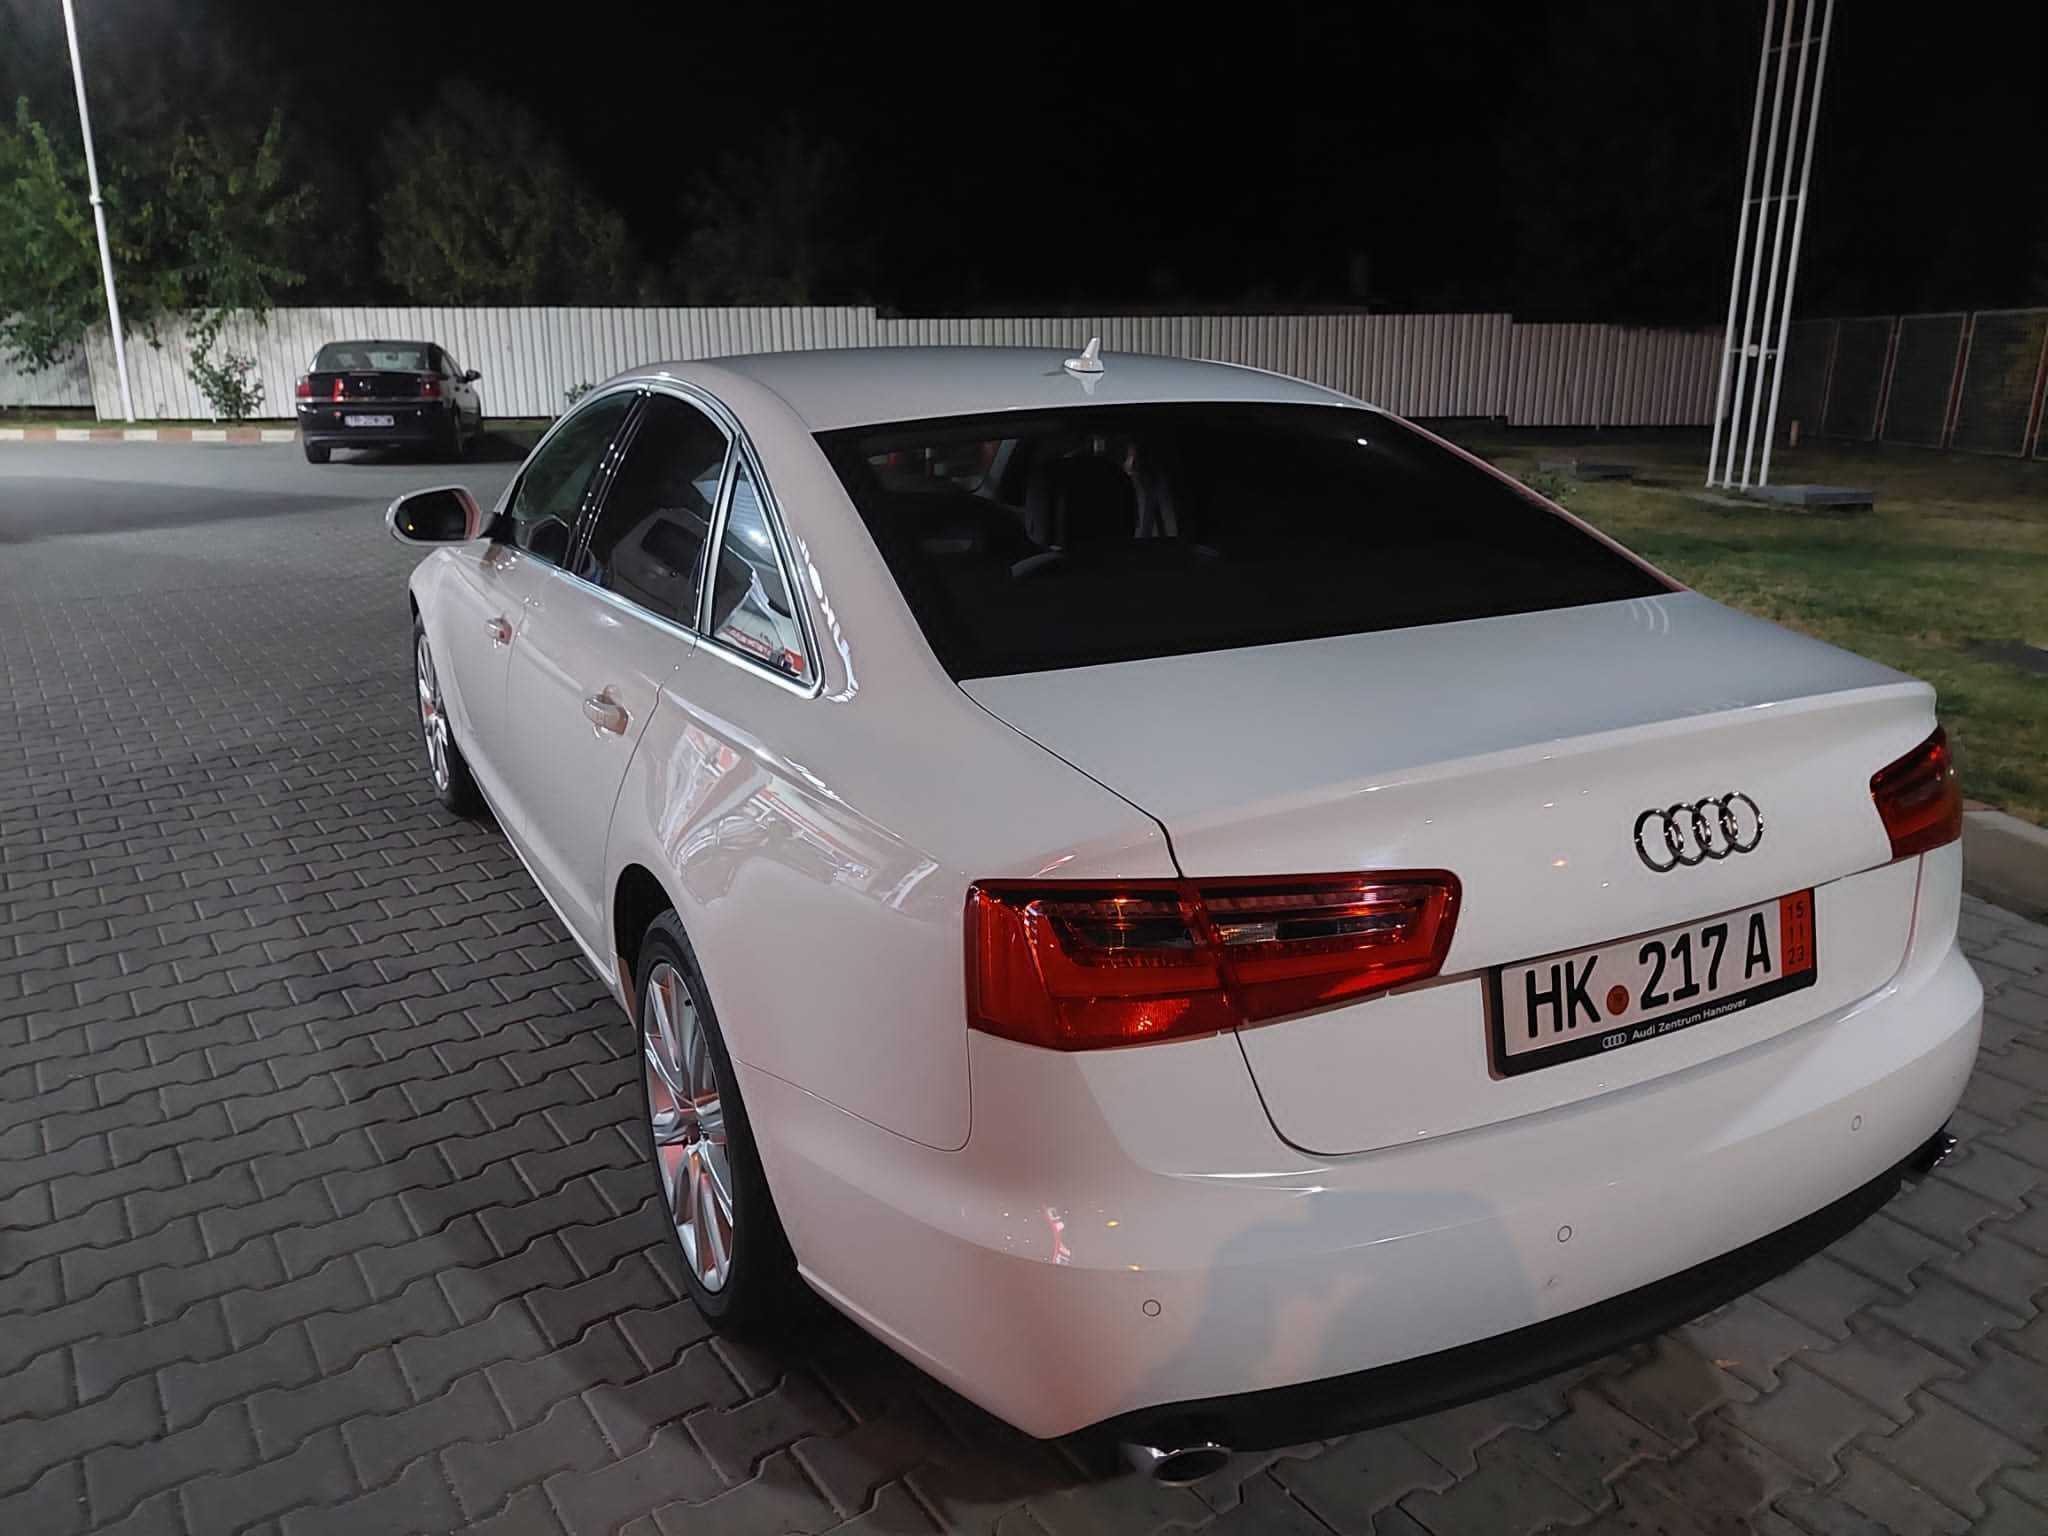 Vând Audi A6,2015 in stare foarte bună!